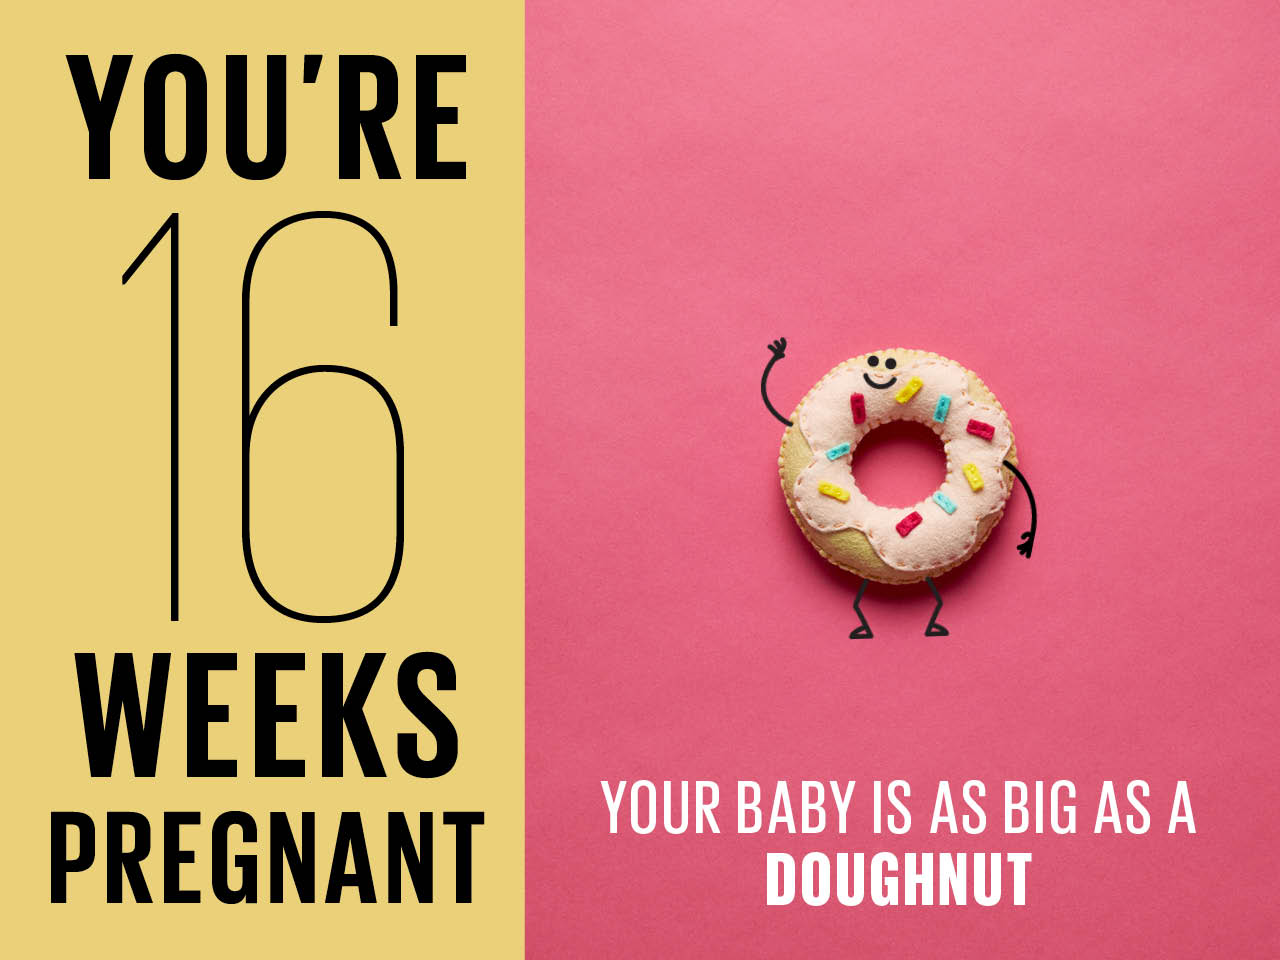 Kích thước thai nhi 16 tuần tuổi to như 1 chiếc bánh rán vòng